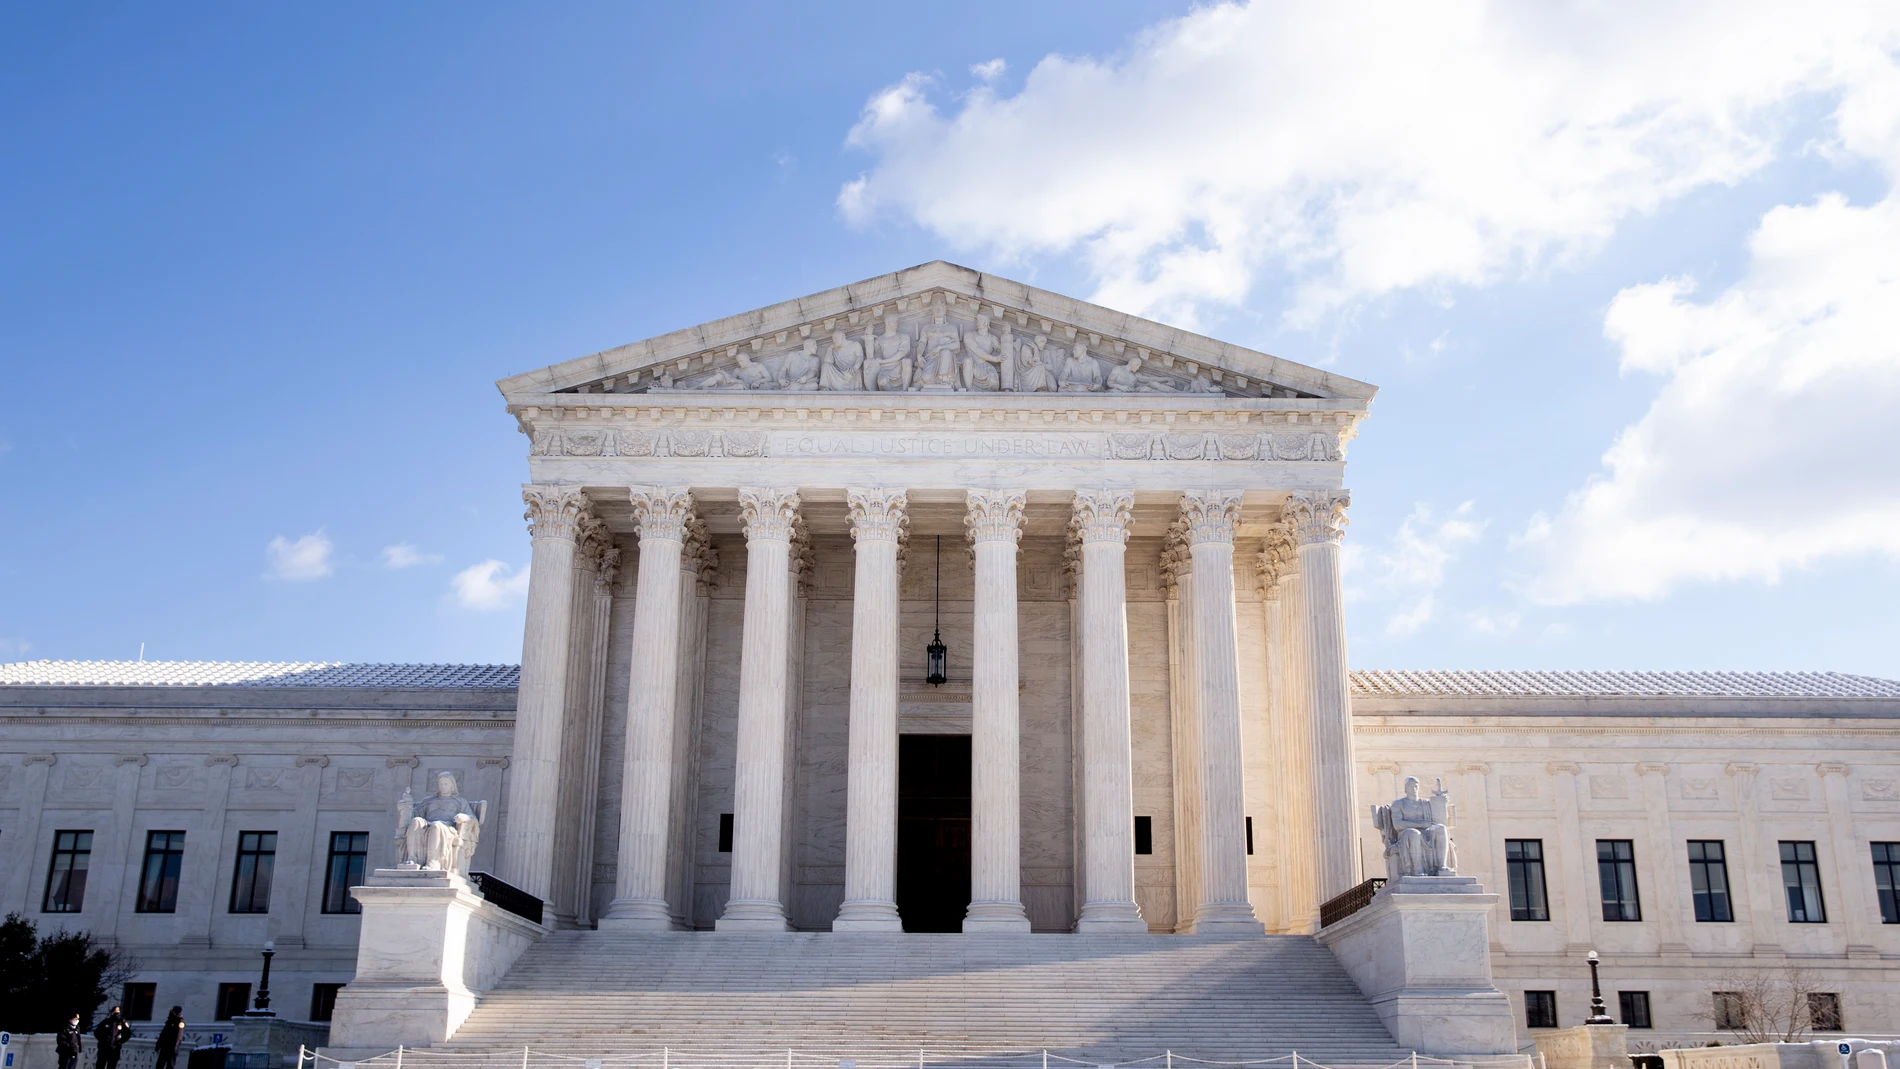 La Corte Suprema de los Estados Unidos en Washington, en una fotografía de archivo